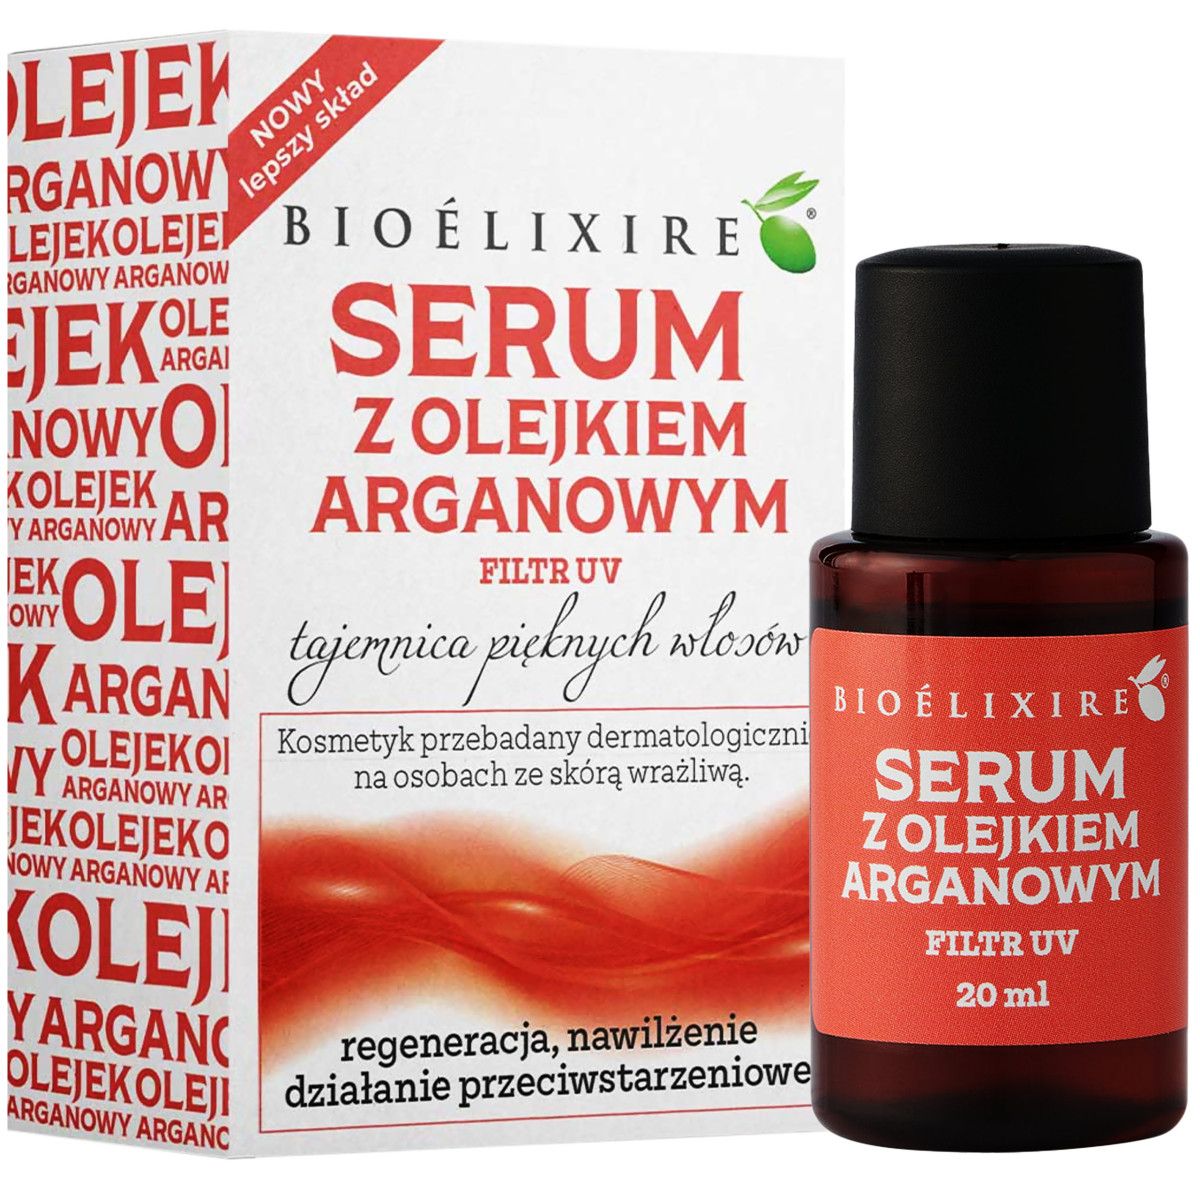 bioelixire argan oil serum olejek arganowy do włosów 50ml